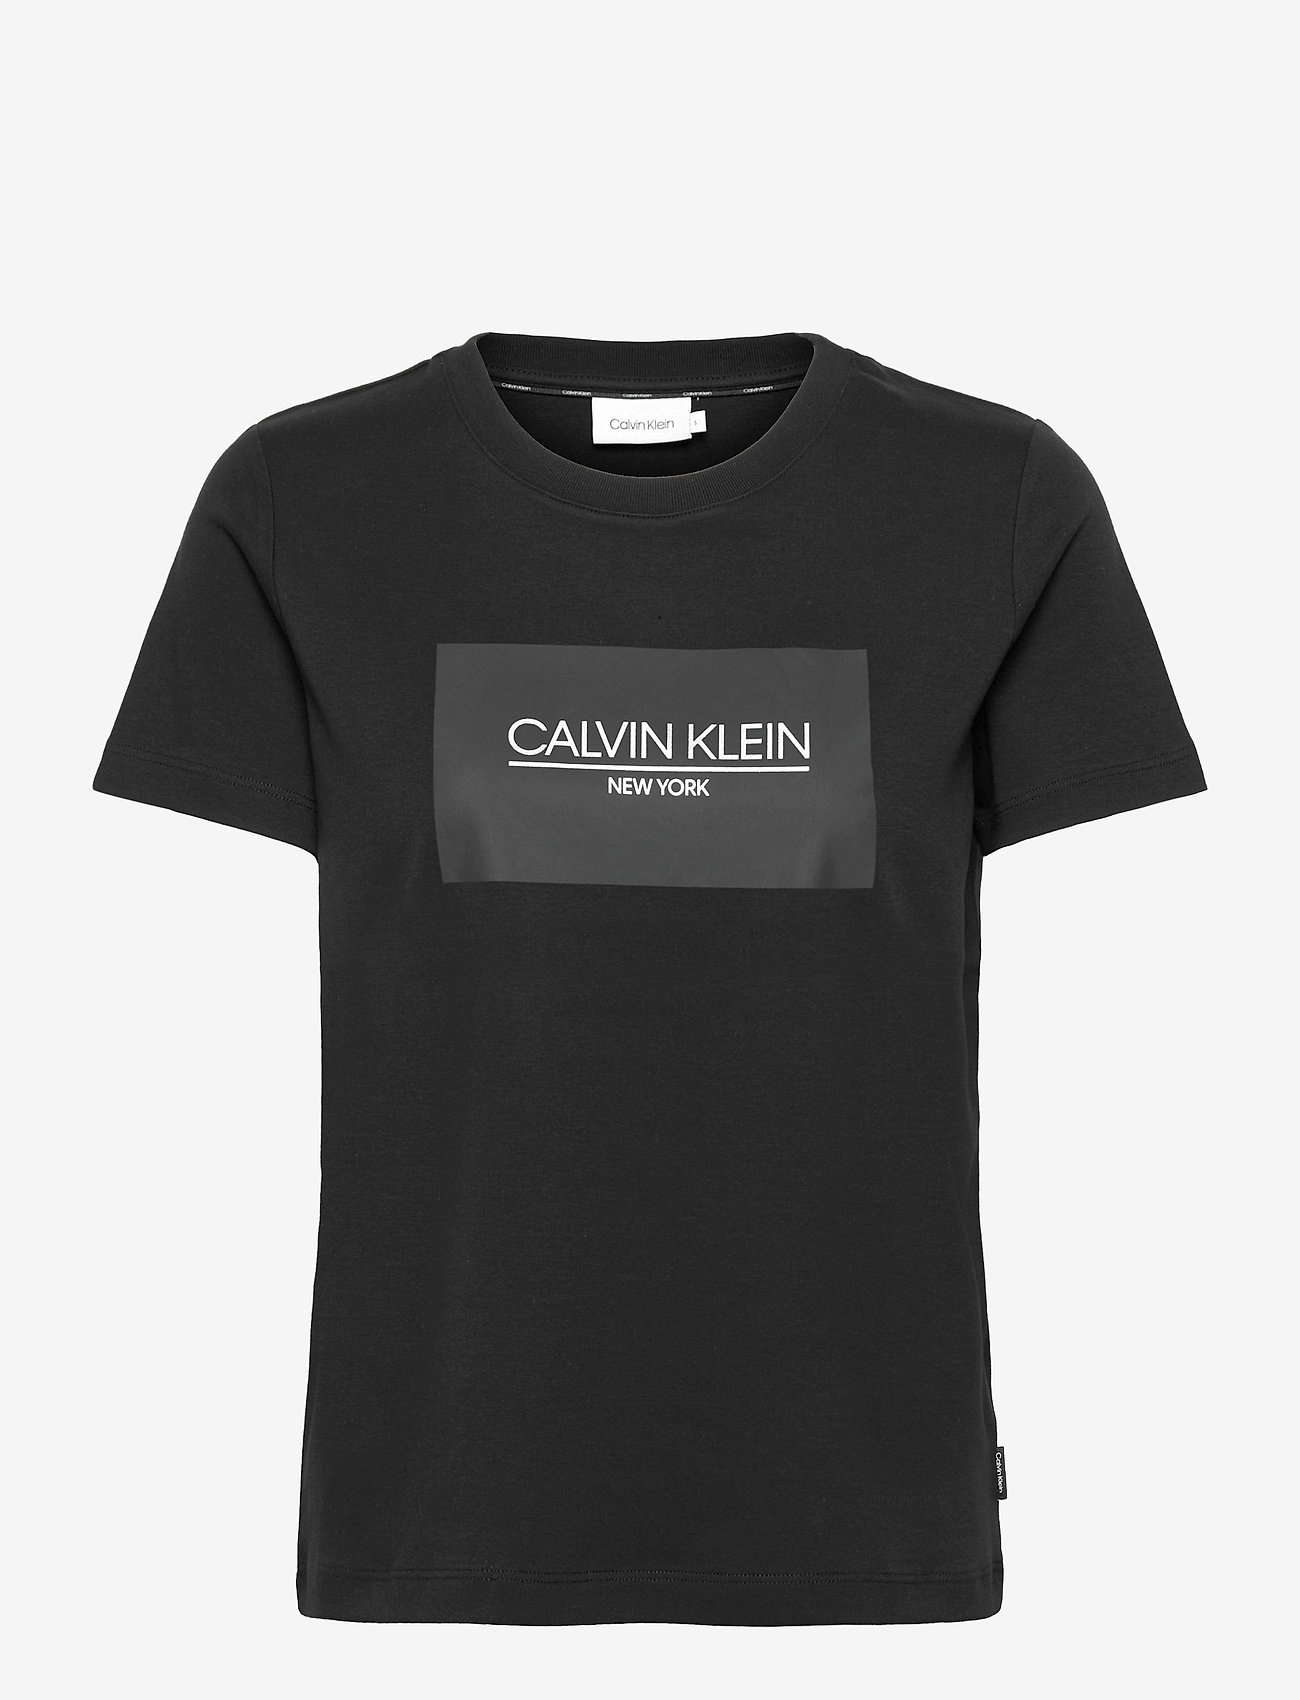 Calvin Klein Ck New Patch T-shirt - T-shirts | Boozt.com